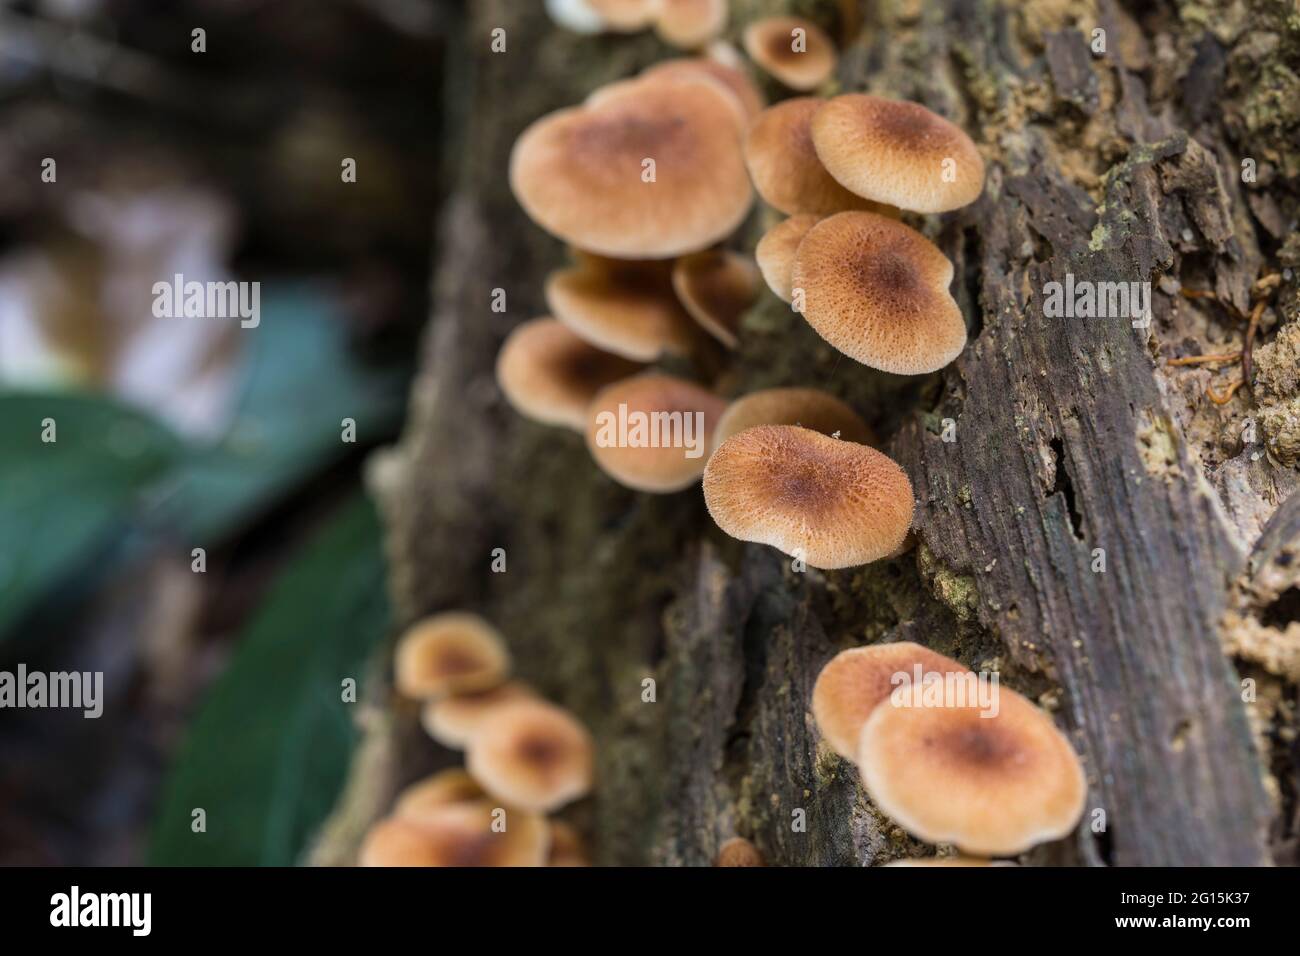 Grupo de setas marrones que crecen en un tronco muerto en un bosque lluvioso Foto de stock